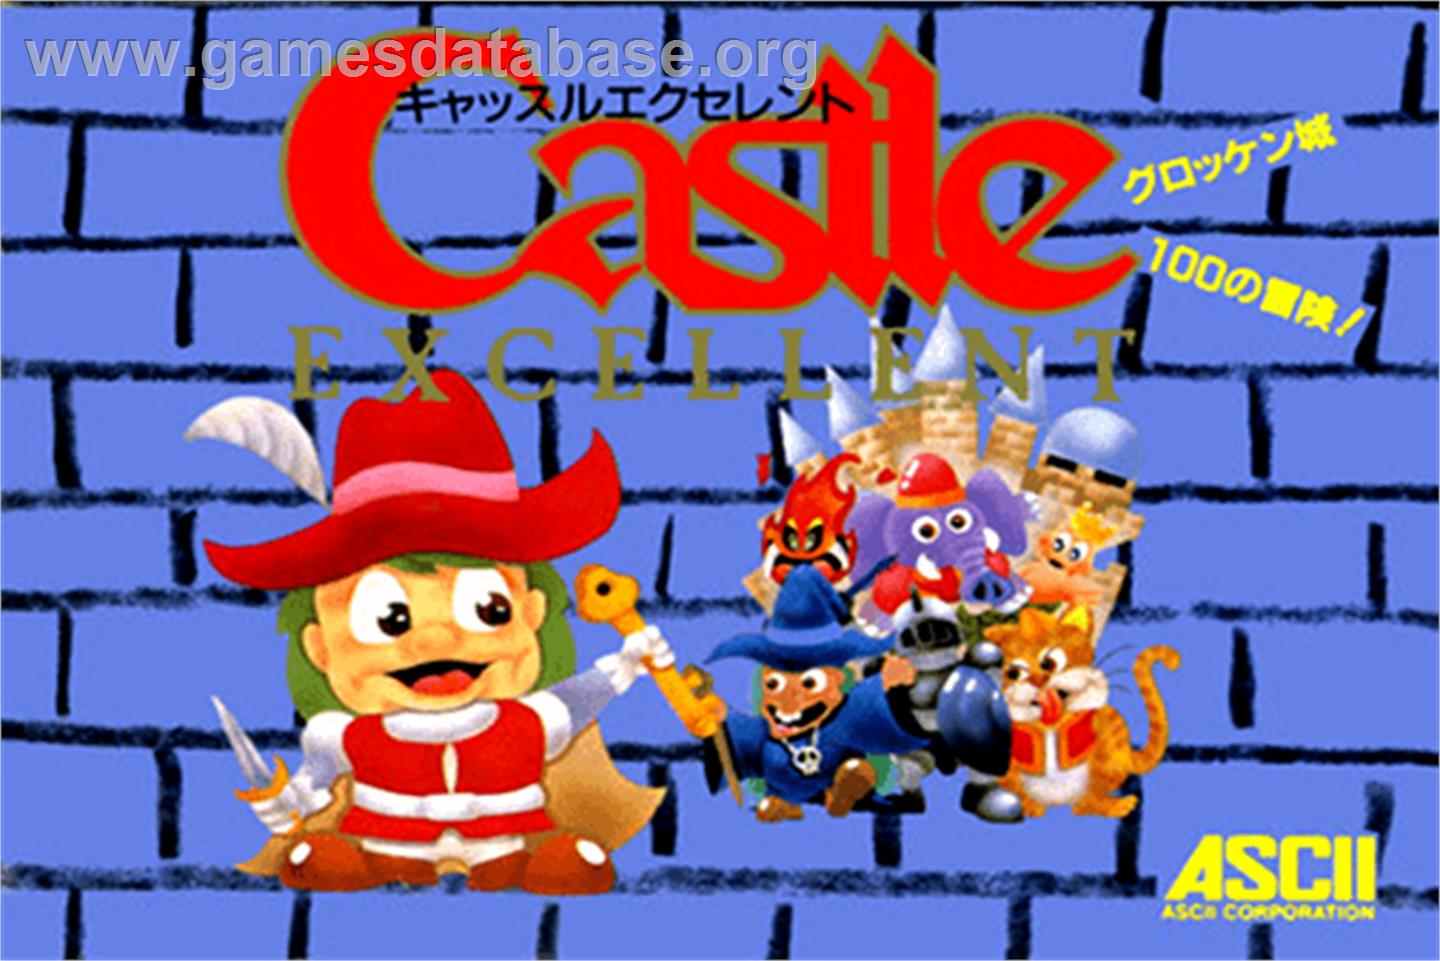 Castle Excellent - Nintendo NES - Artwork - Box